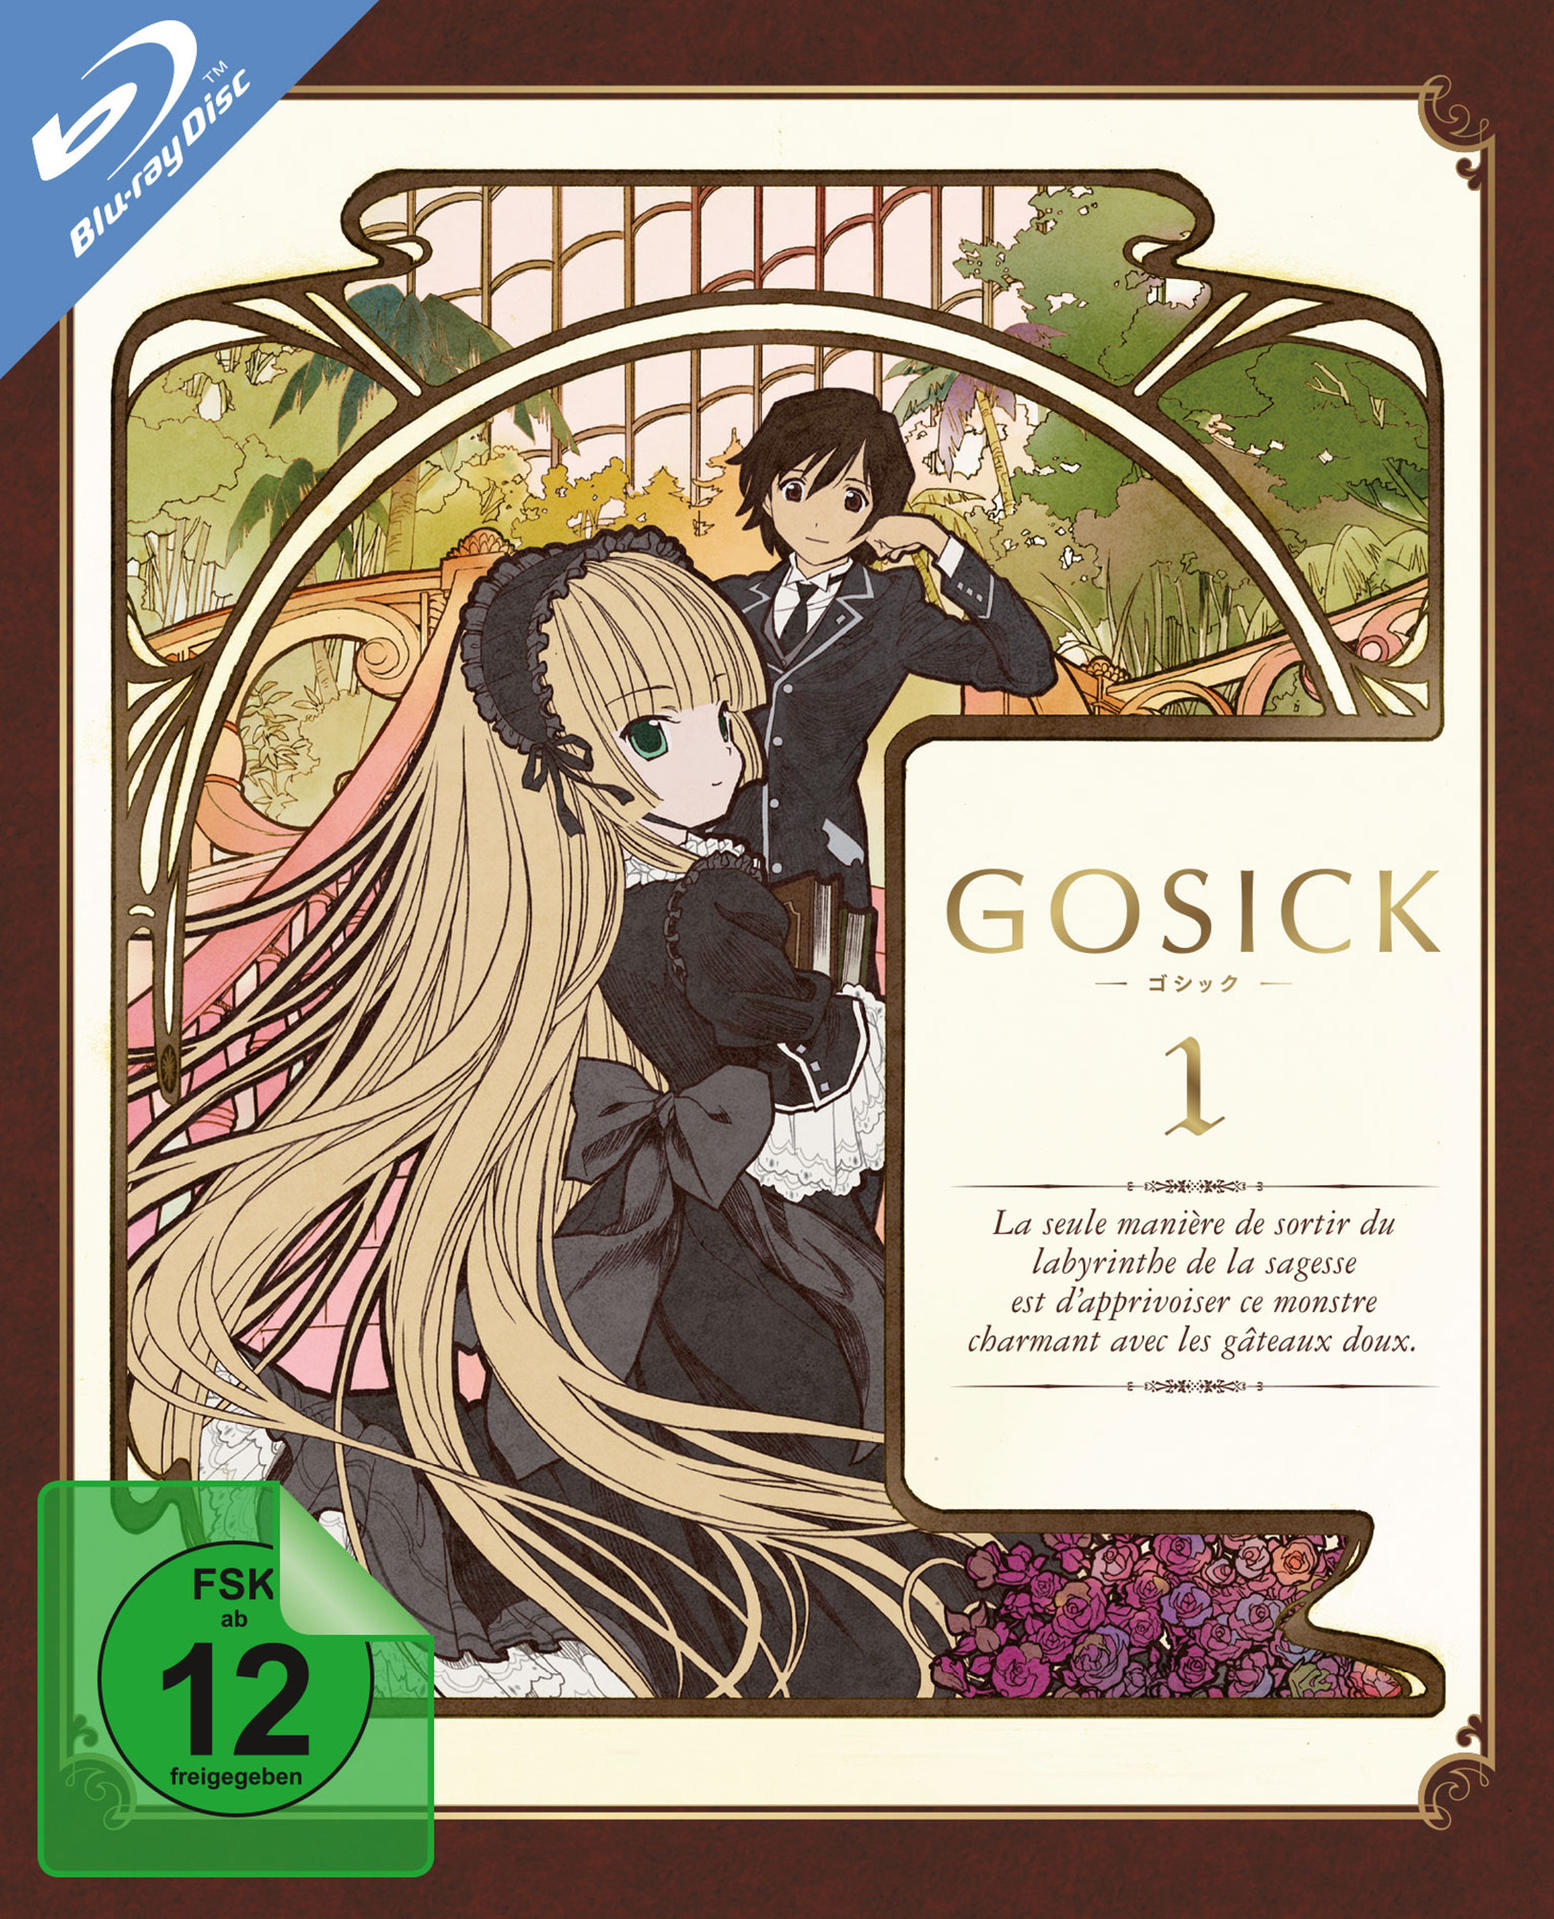 1-6) (Ep. Gosick 1 Vol. Blu-ray